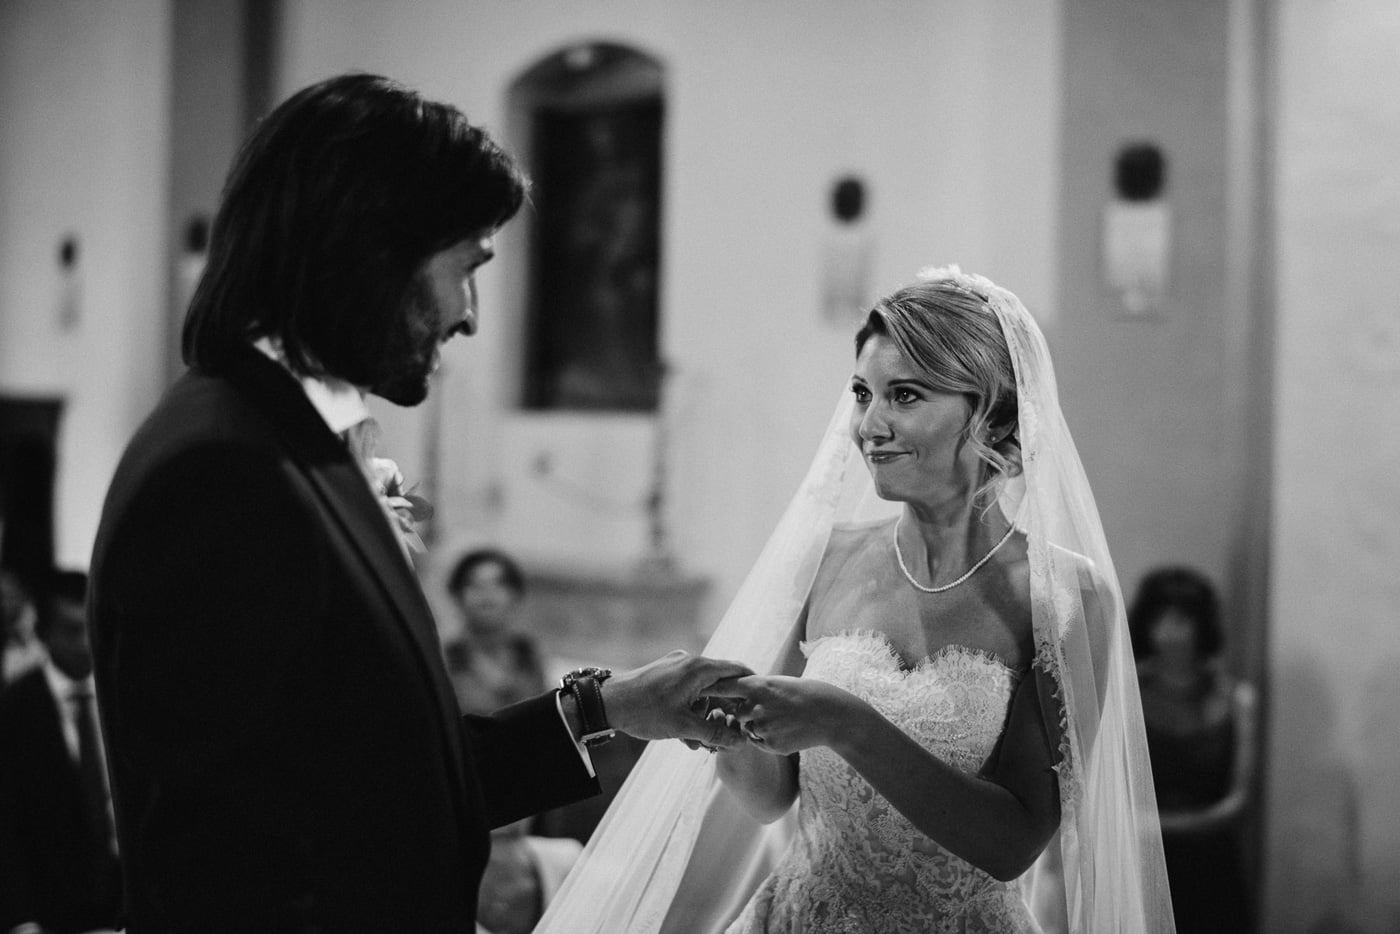 Andrea & Francesca | Wedding at Borgo San Luigi by Federico Pannacci 43